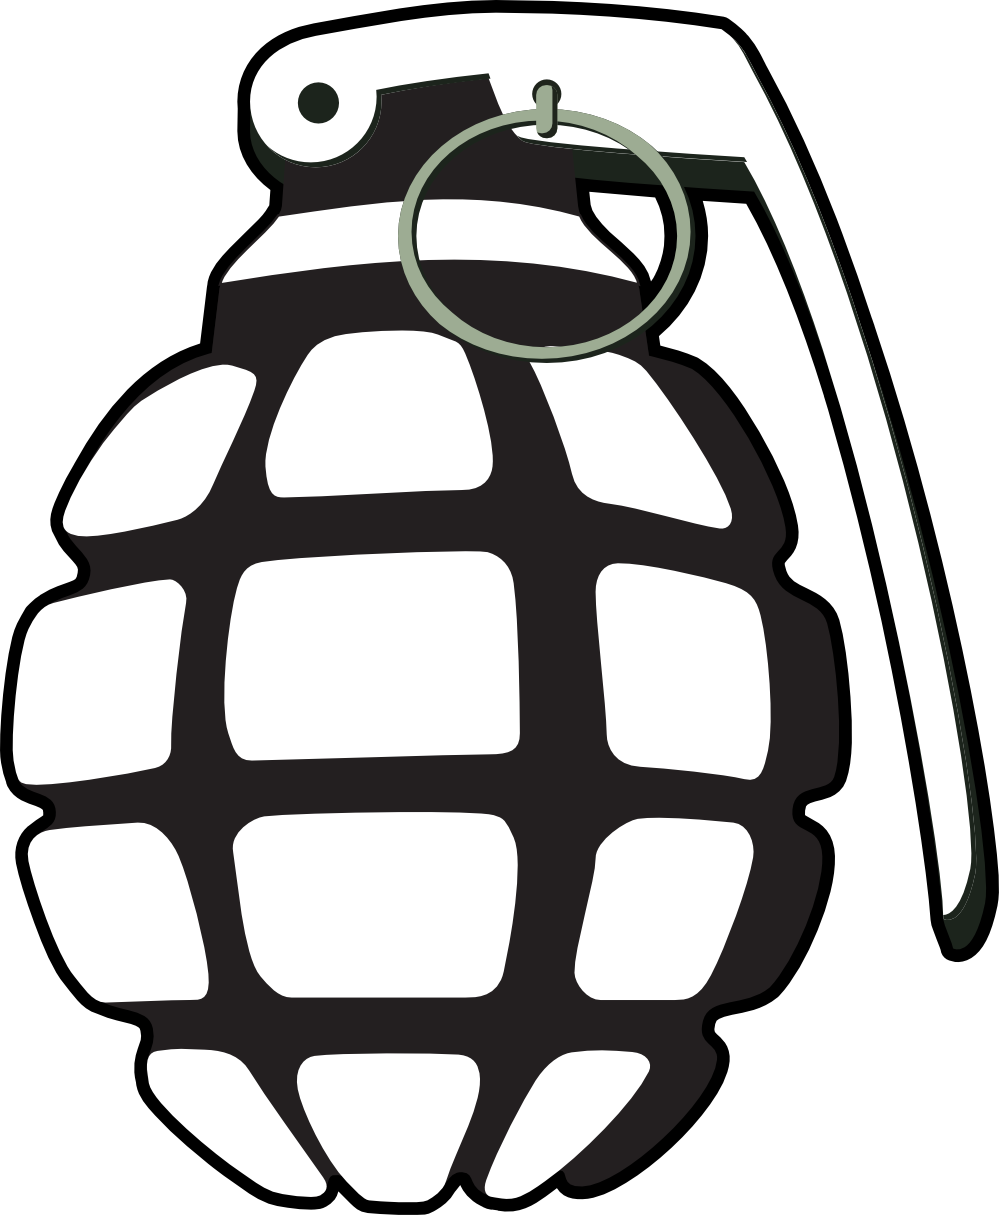 grenade normal tzunghaor black white clipartist.net clipartist.net ...